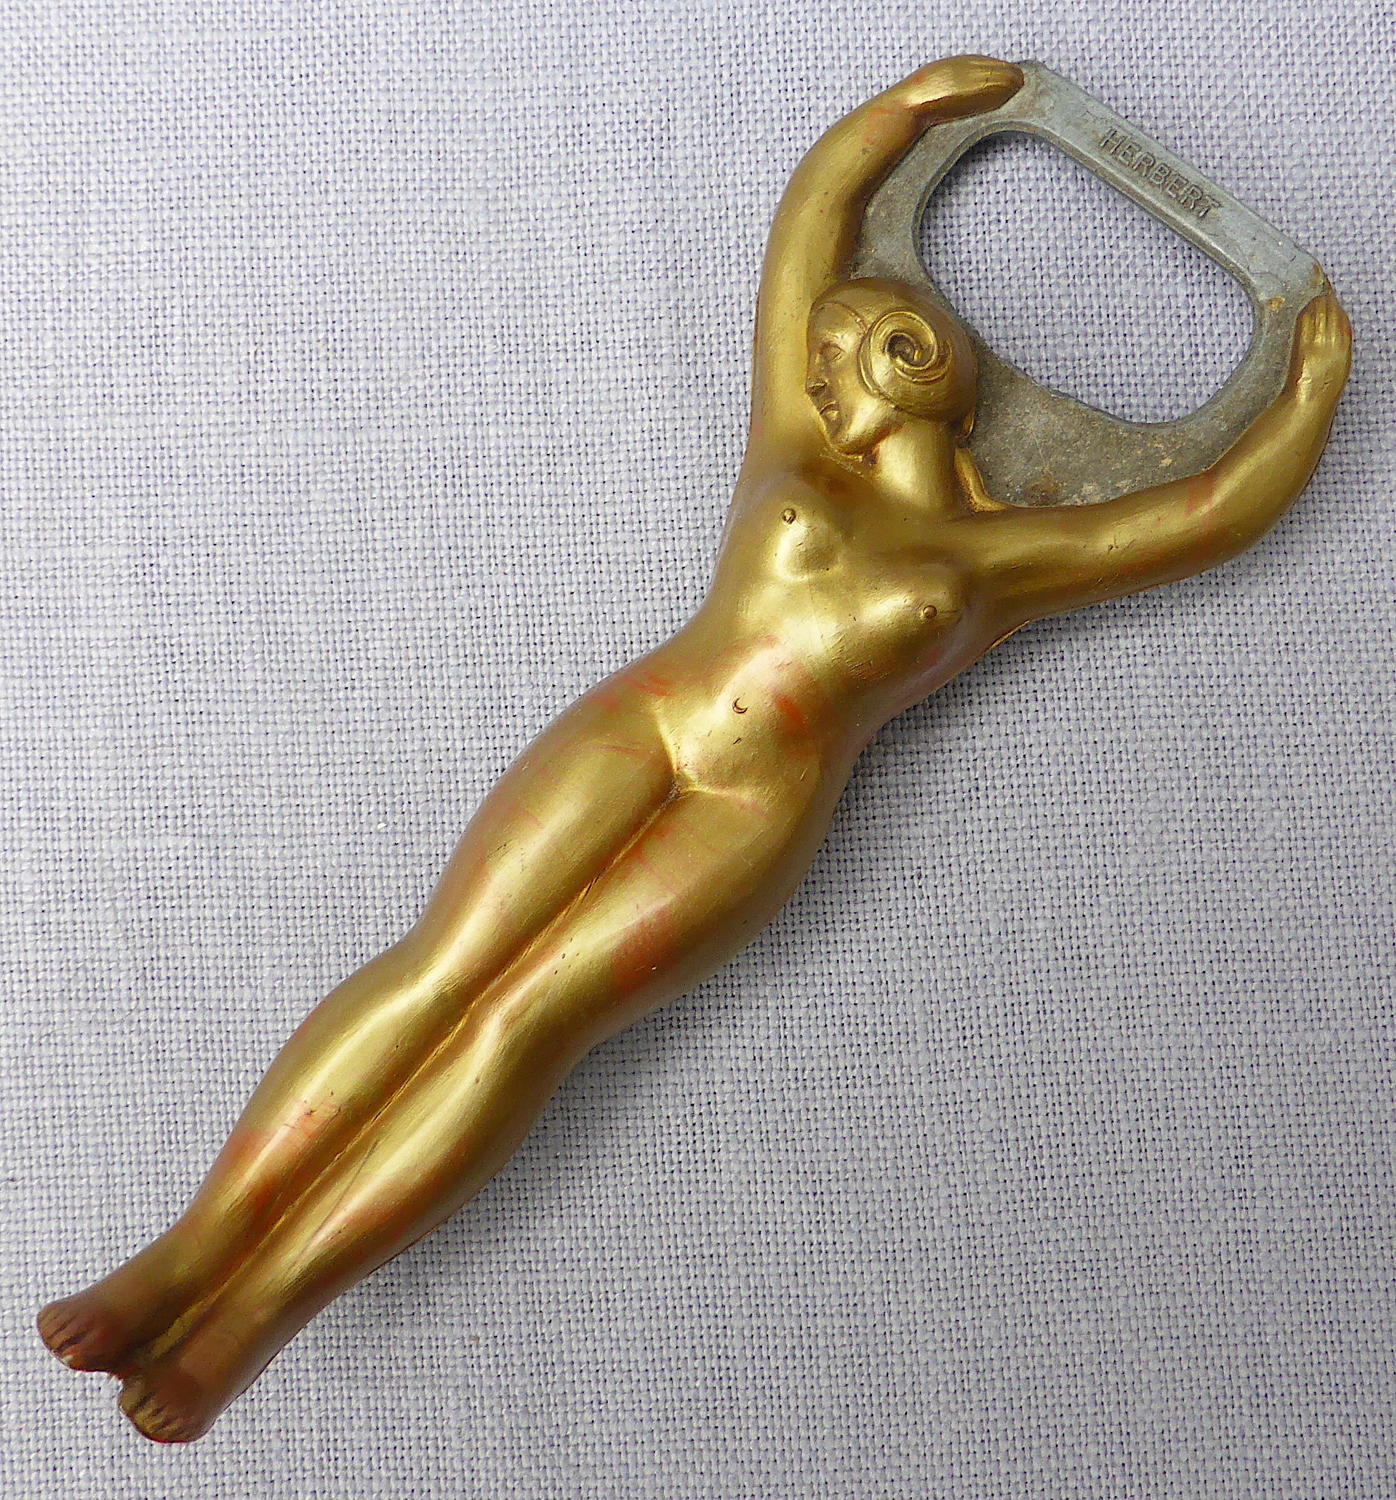 Art Deco female nude Herbert bottle opener